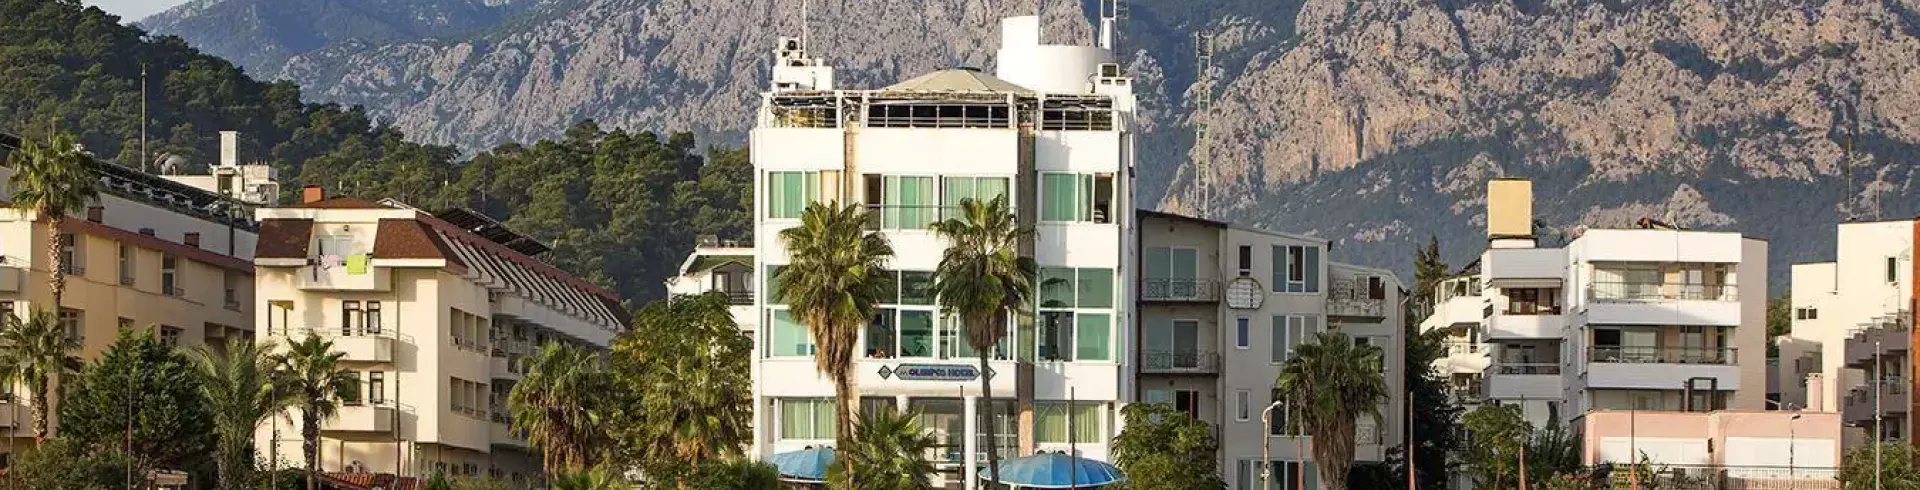 Olimpos Beach Hotel By Rrh&r